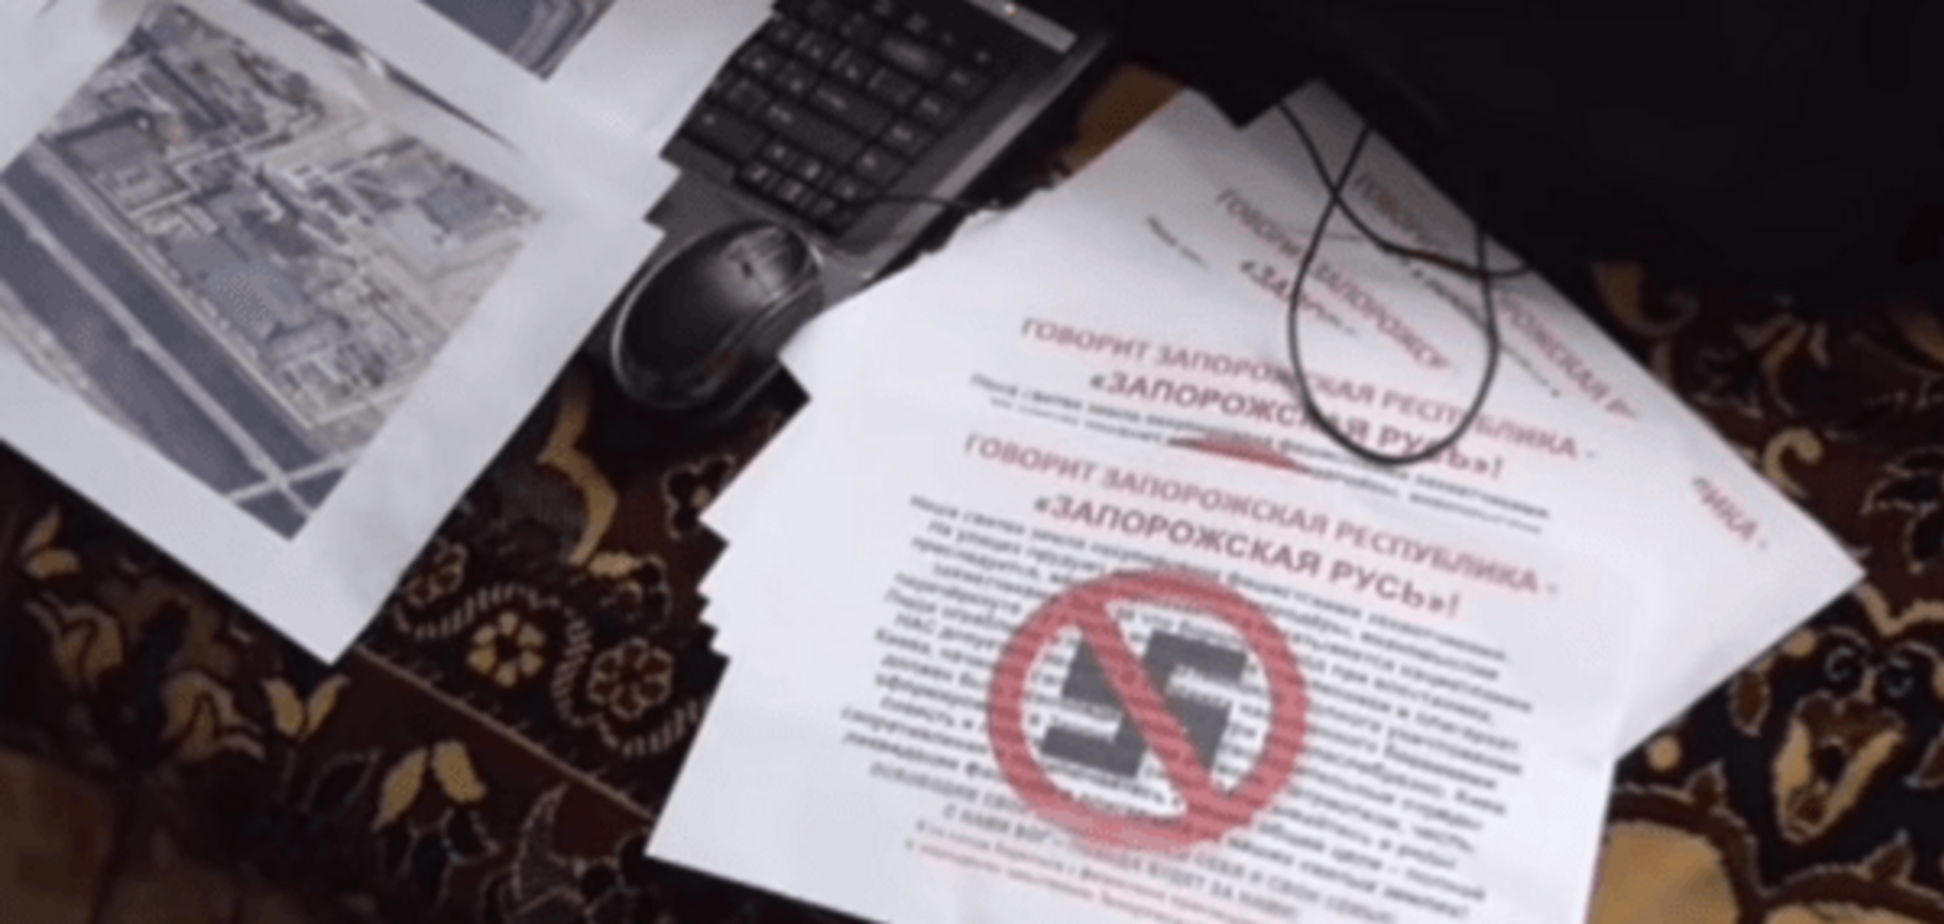 Даремно ховалися: у Запоріжжі викрили групу шпигунів 'ДНР'